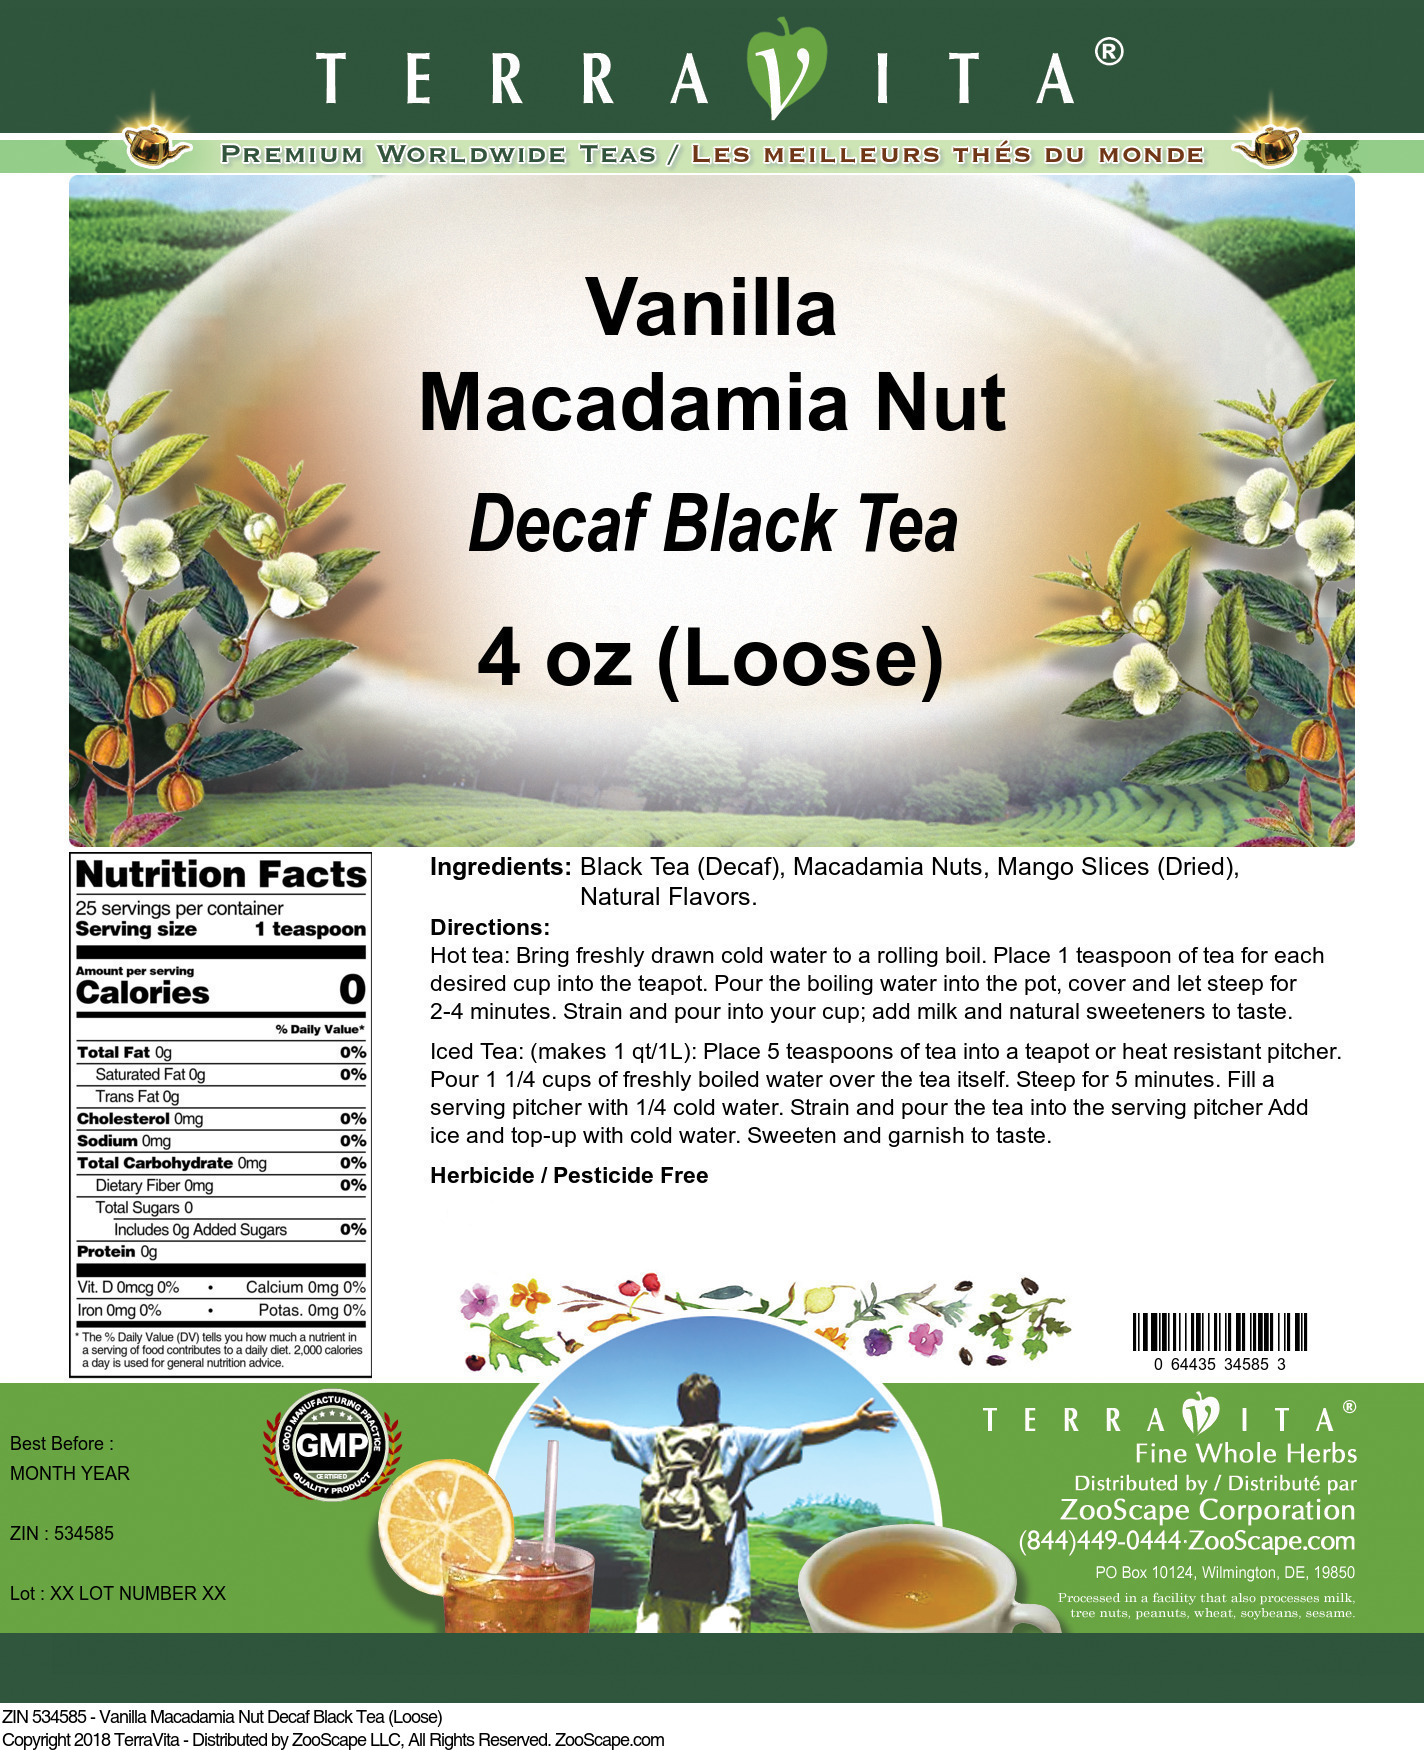 Vanilla Macadamia Nut Decaf Black Tea (Loose) - Label